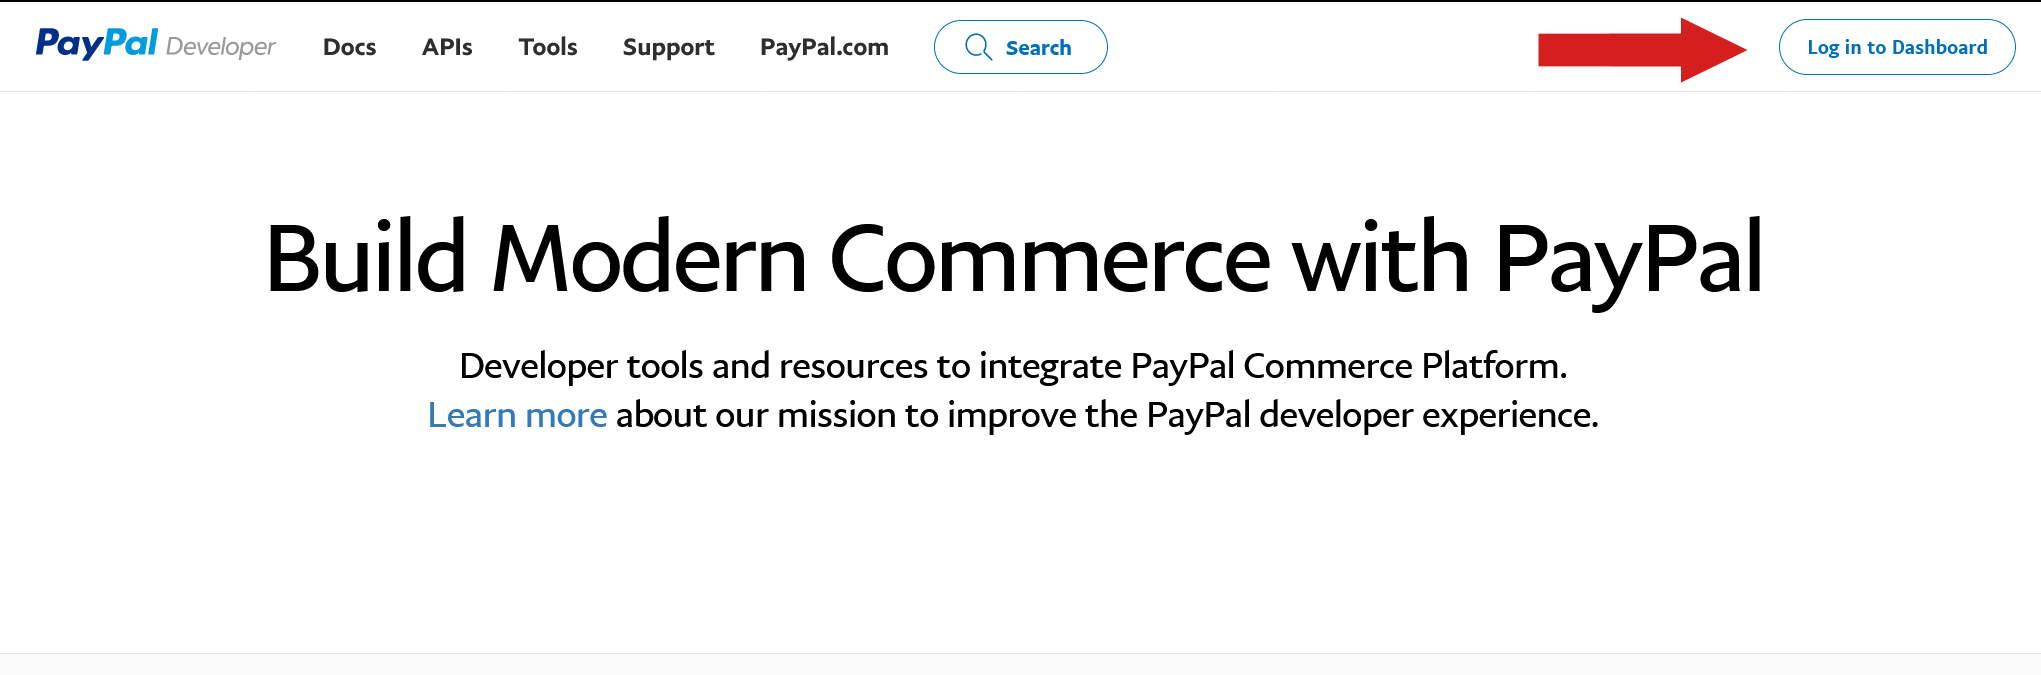 Acceso a PayPal developer